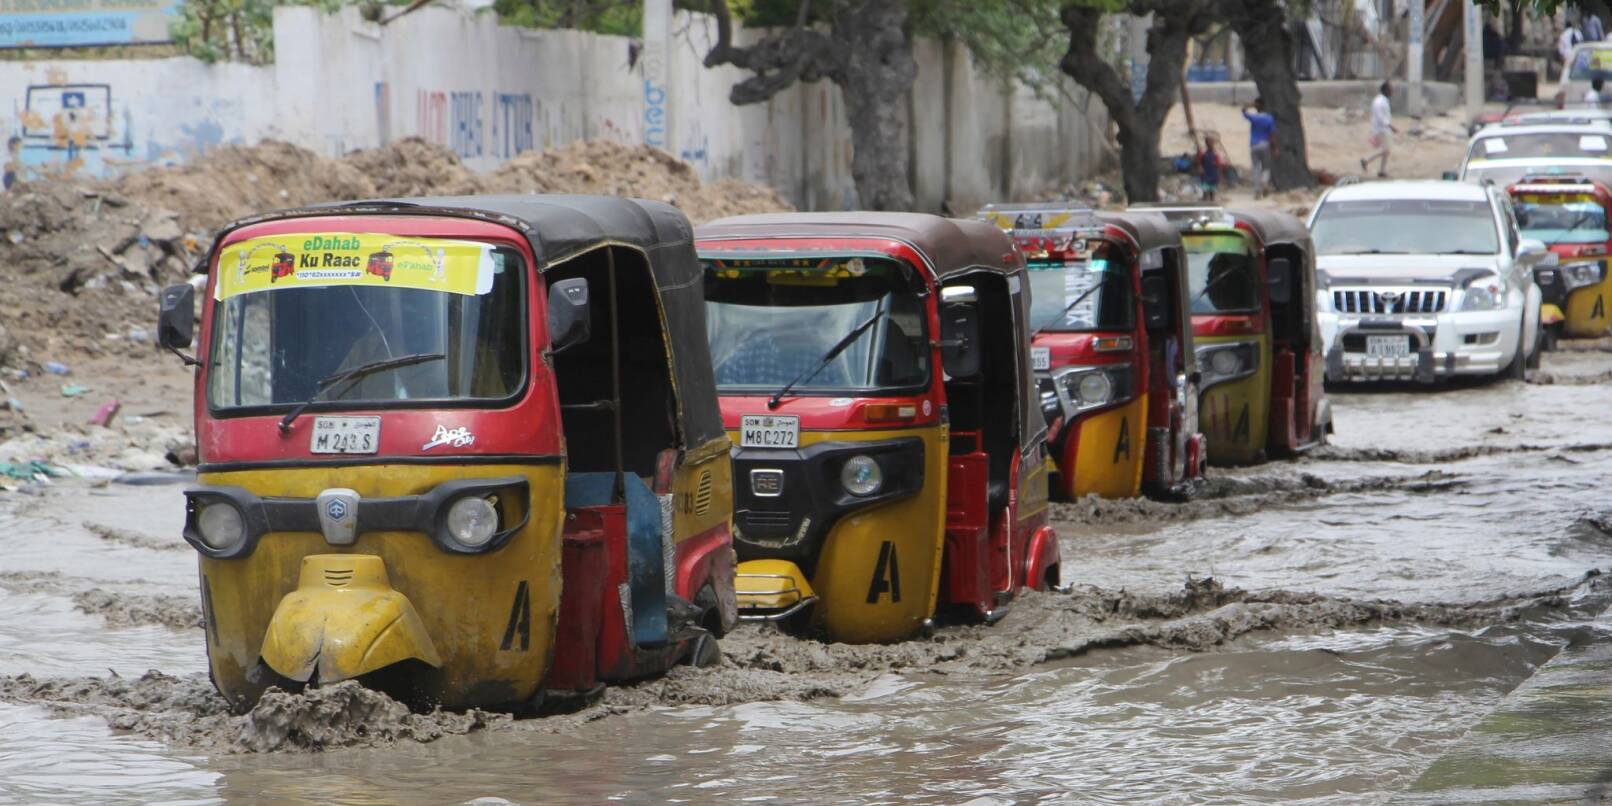 Tuktuks fahren durch eine überflutete Straße nach starkem Regen in Mogadischu.